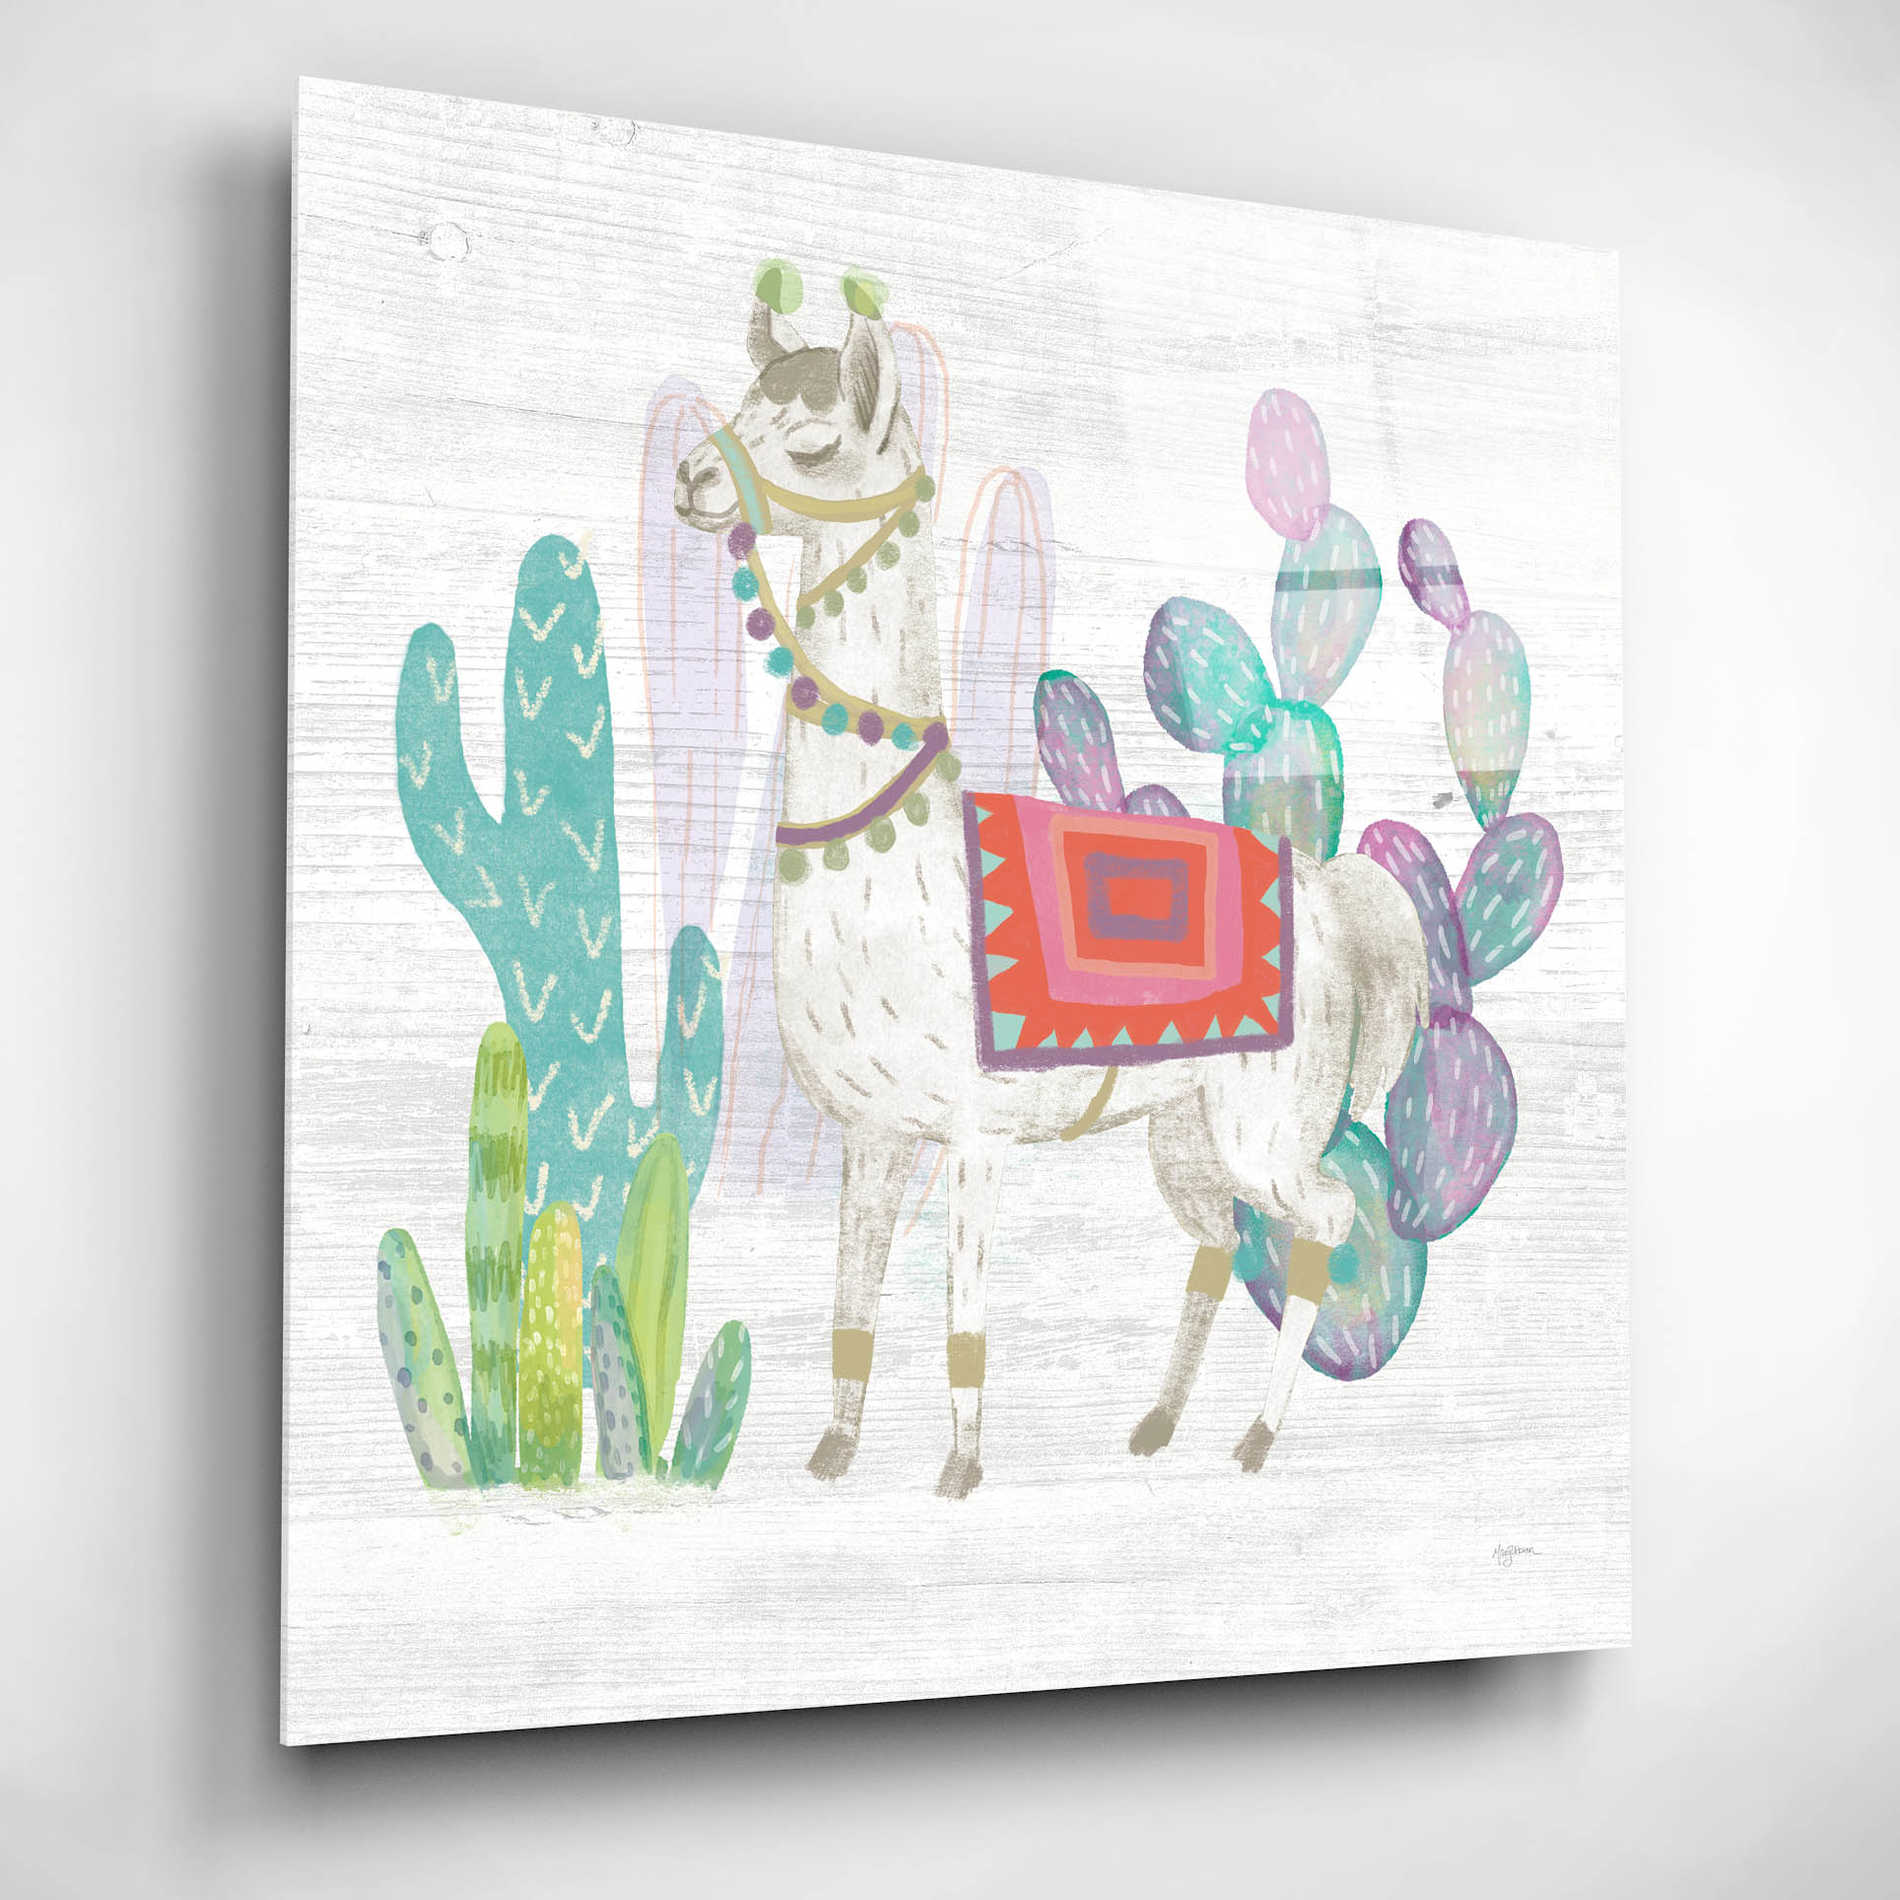 Epic Art 'Lovely Llamas V' by Mary Urban, Acrylic Glass Wall Art,12x12